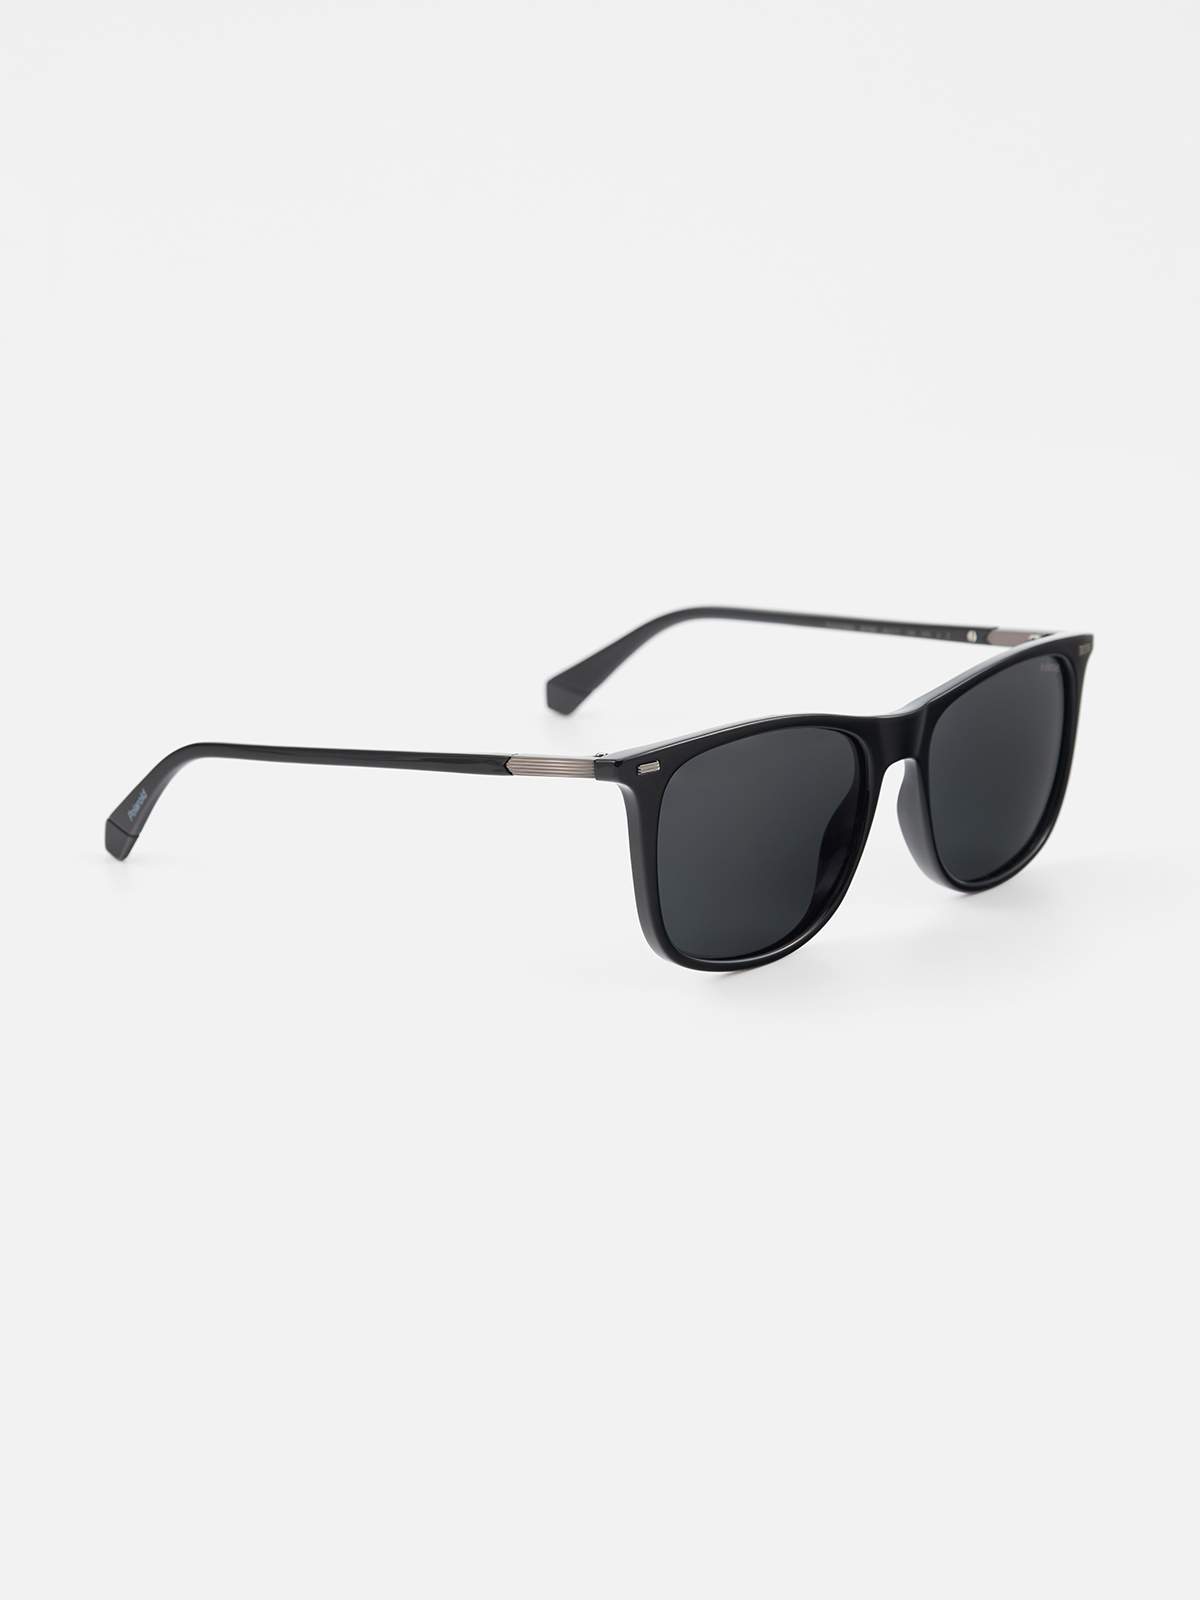 Солнцезащитные очки мужские Polaroid PLD 2109/S серые - купить в All Store, цена на Мегамаркет